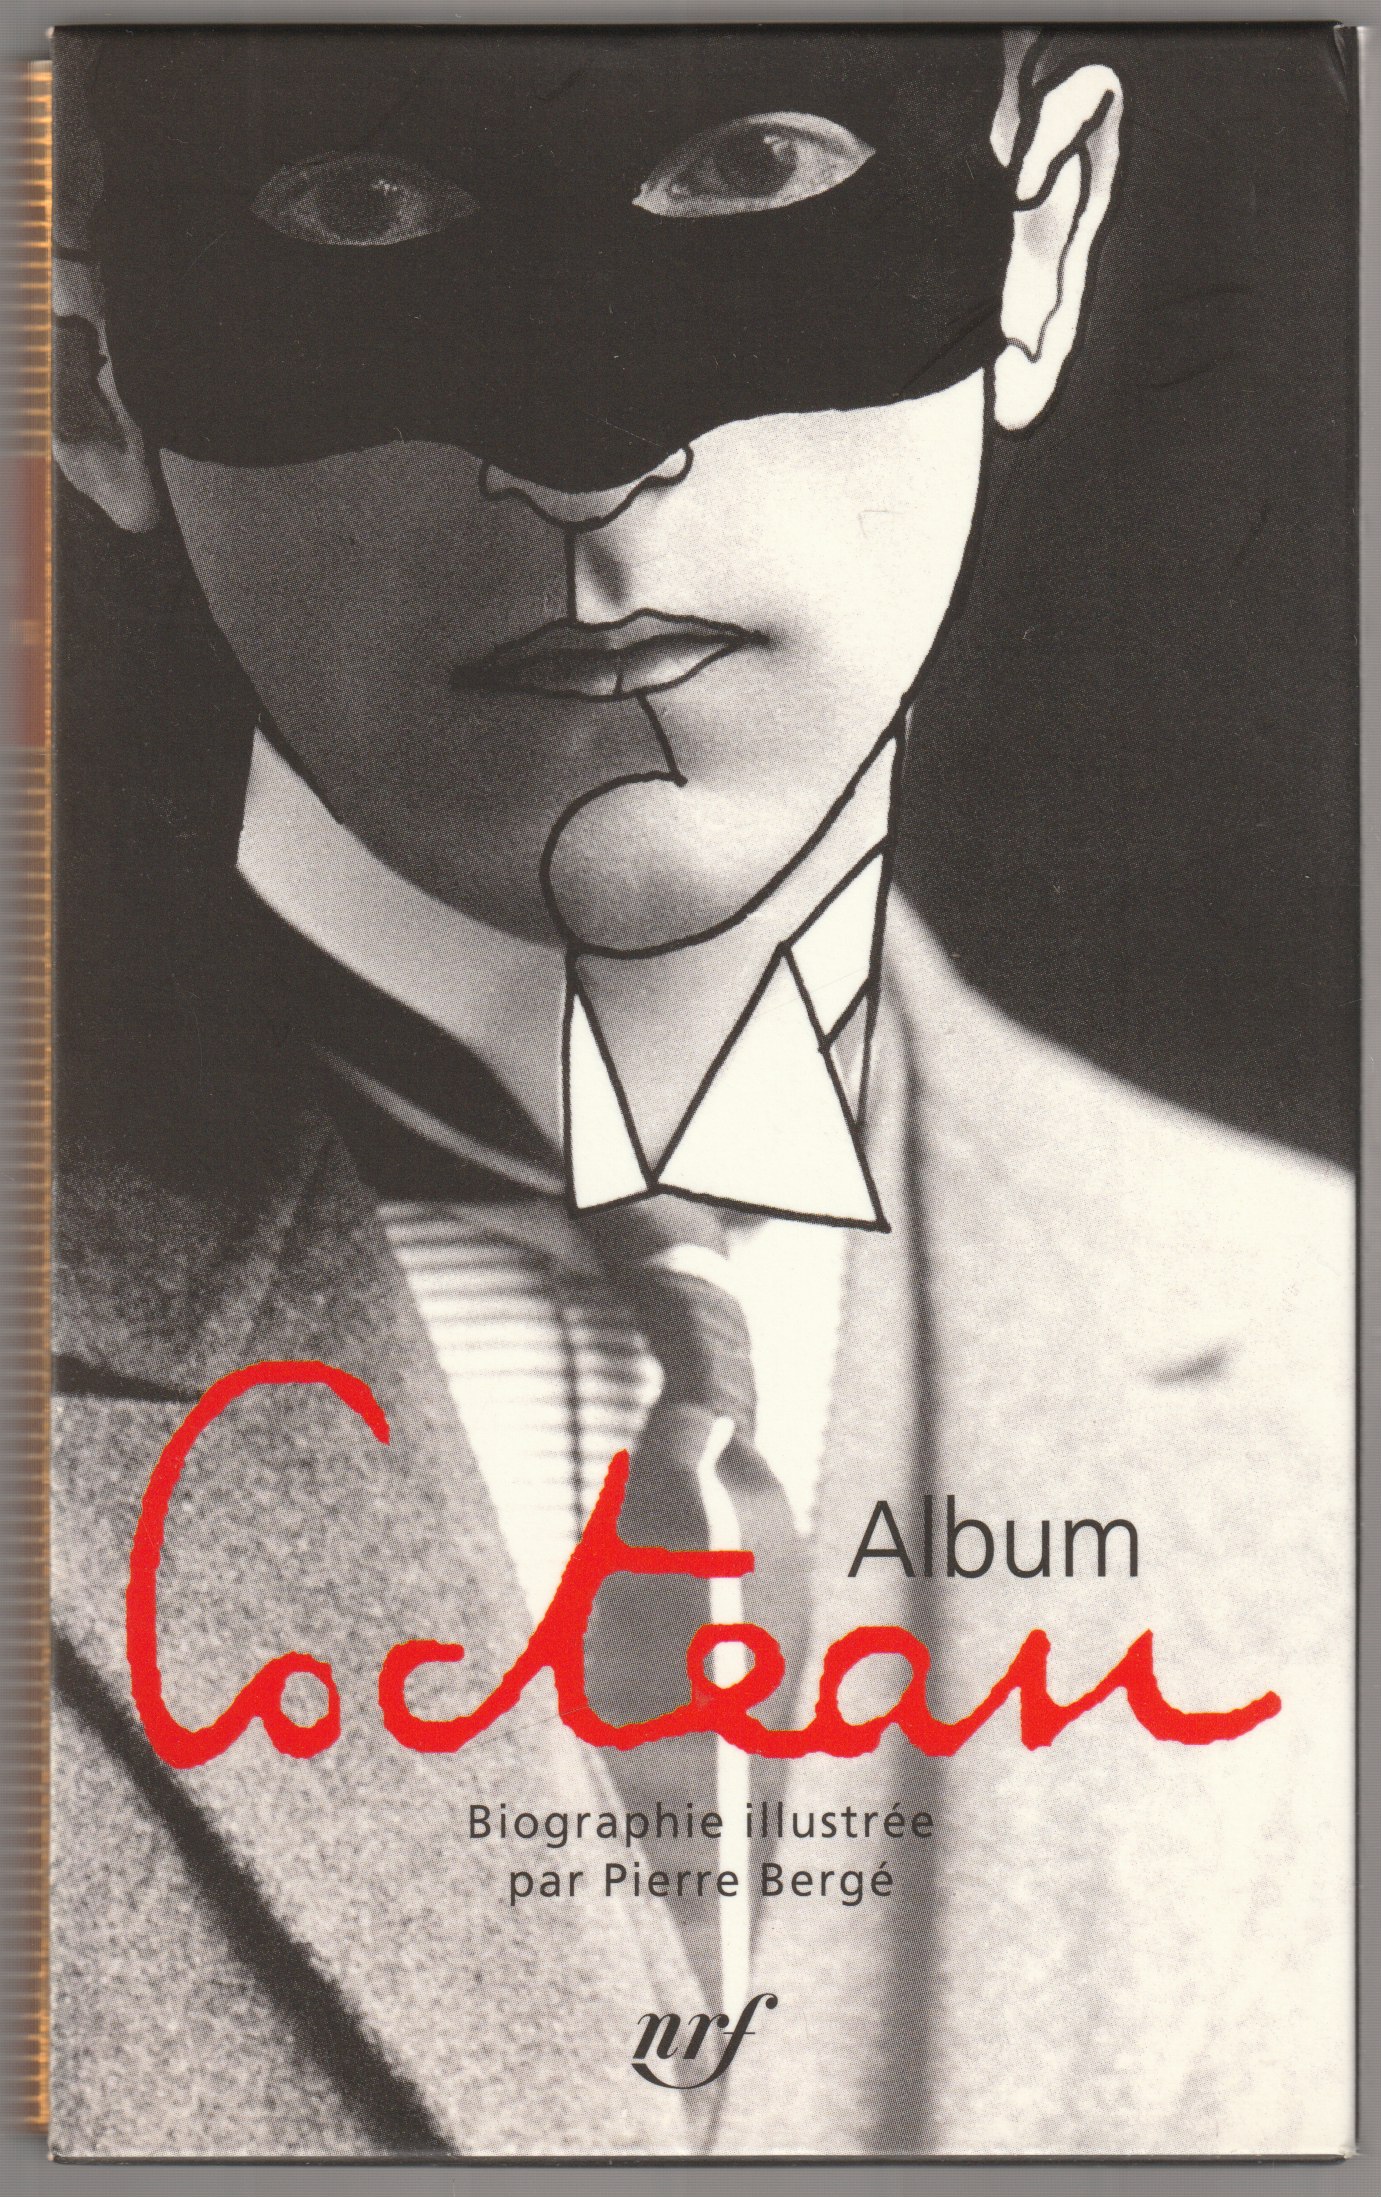 Album Cocteau.